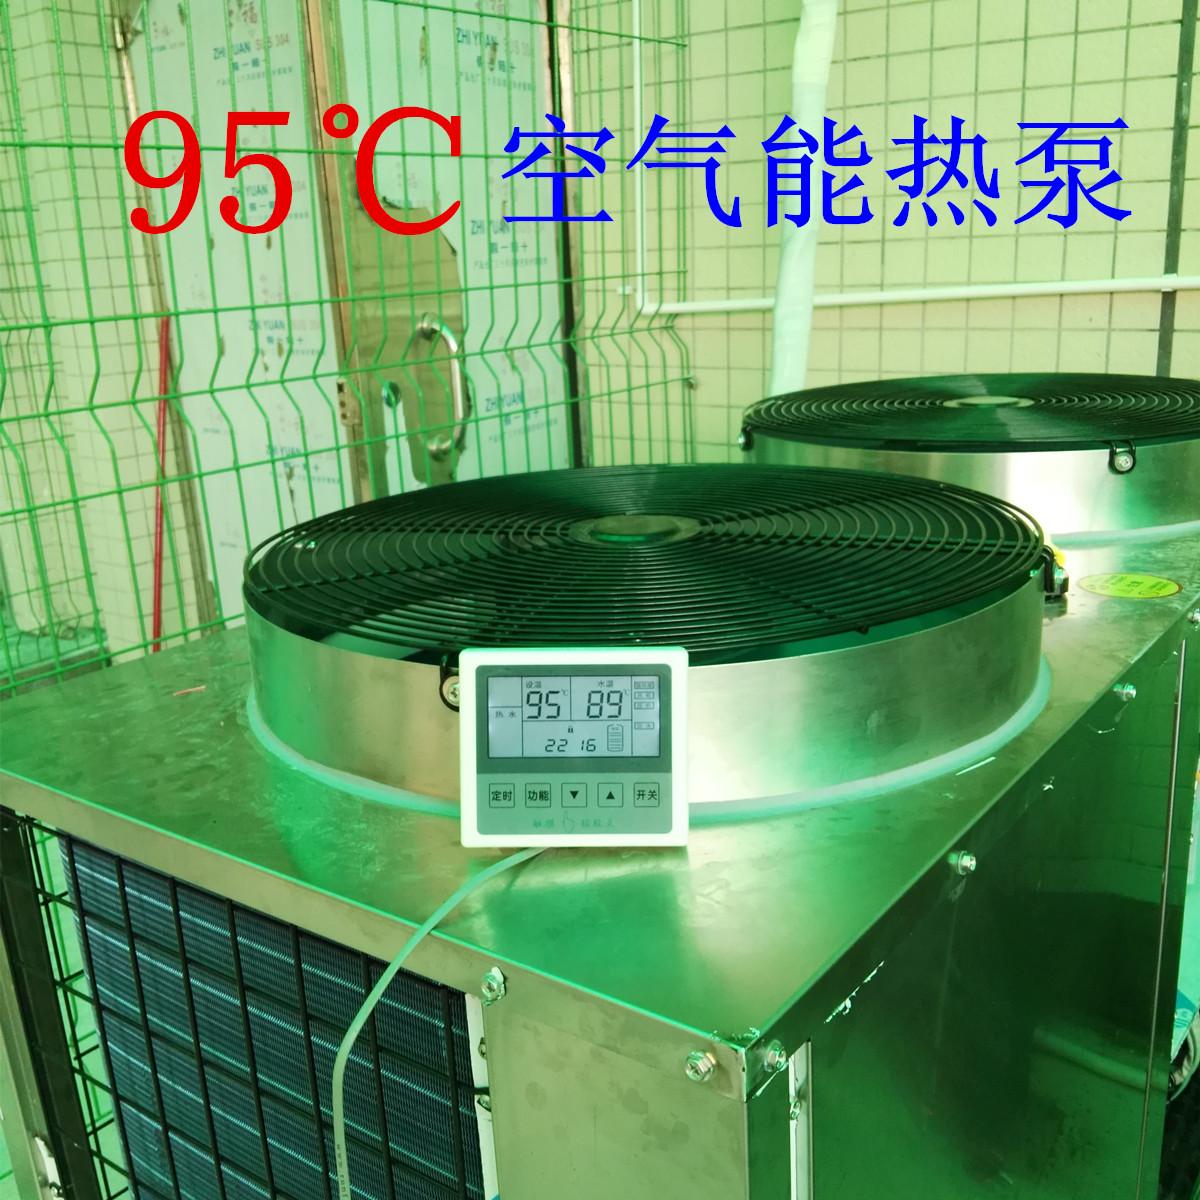 95度空气能热泵 95度空气源热泵